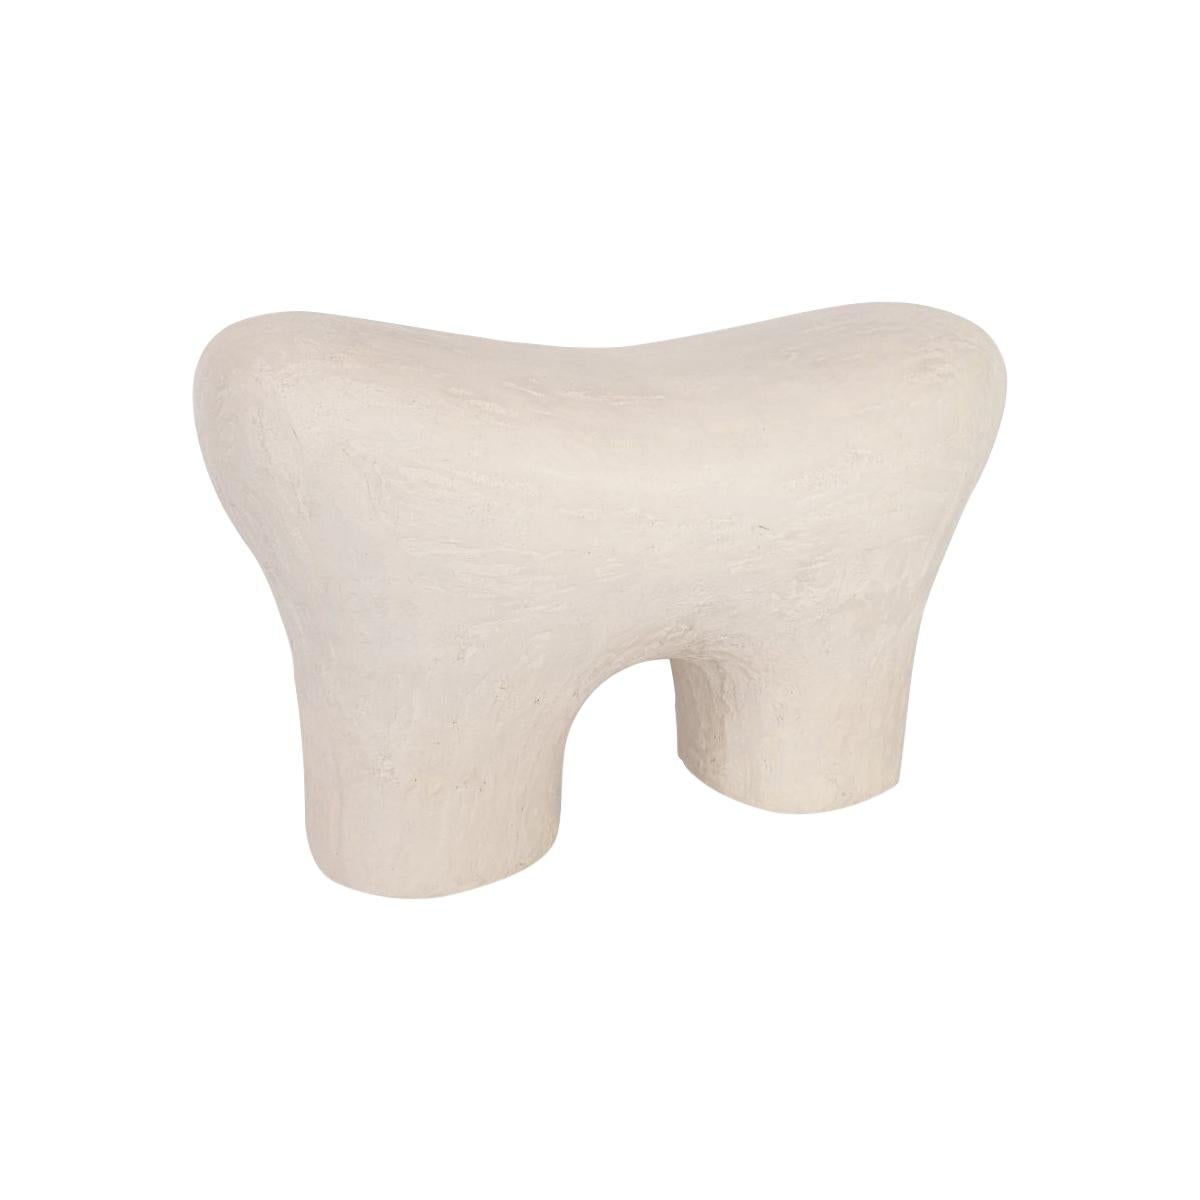 Weißer Zahnstuhl von Dongwook Choi
Abmessungen: 70 x 37 x 45 cm
MATERIALIEN: EPS, Gips

Es handelt sich um einen Stuhl mit dem Motiv der Zahnform. Nach der Urethan-Bemalung, um dem durch 3D-Modellierung geschnitzten EPS Härte zu verleihen, wollte